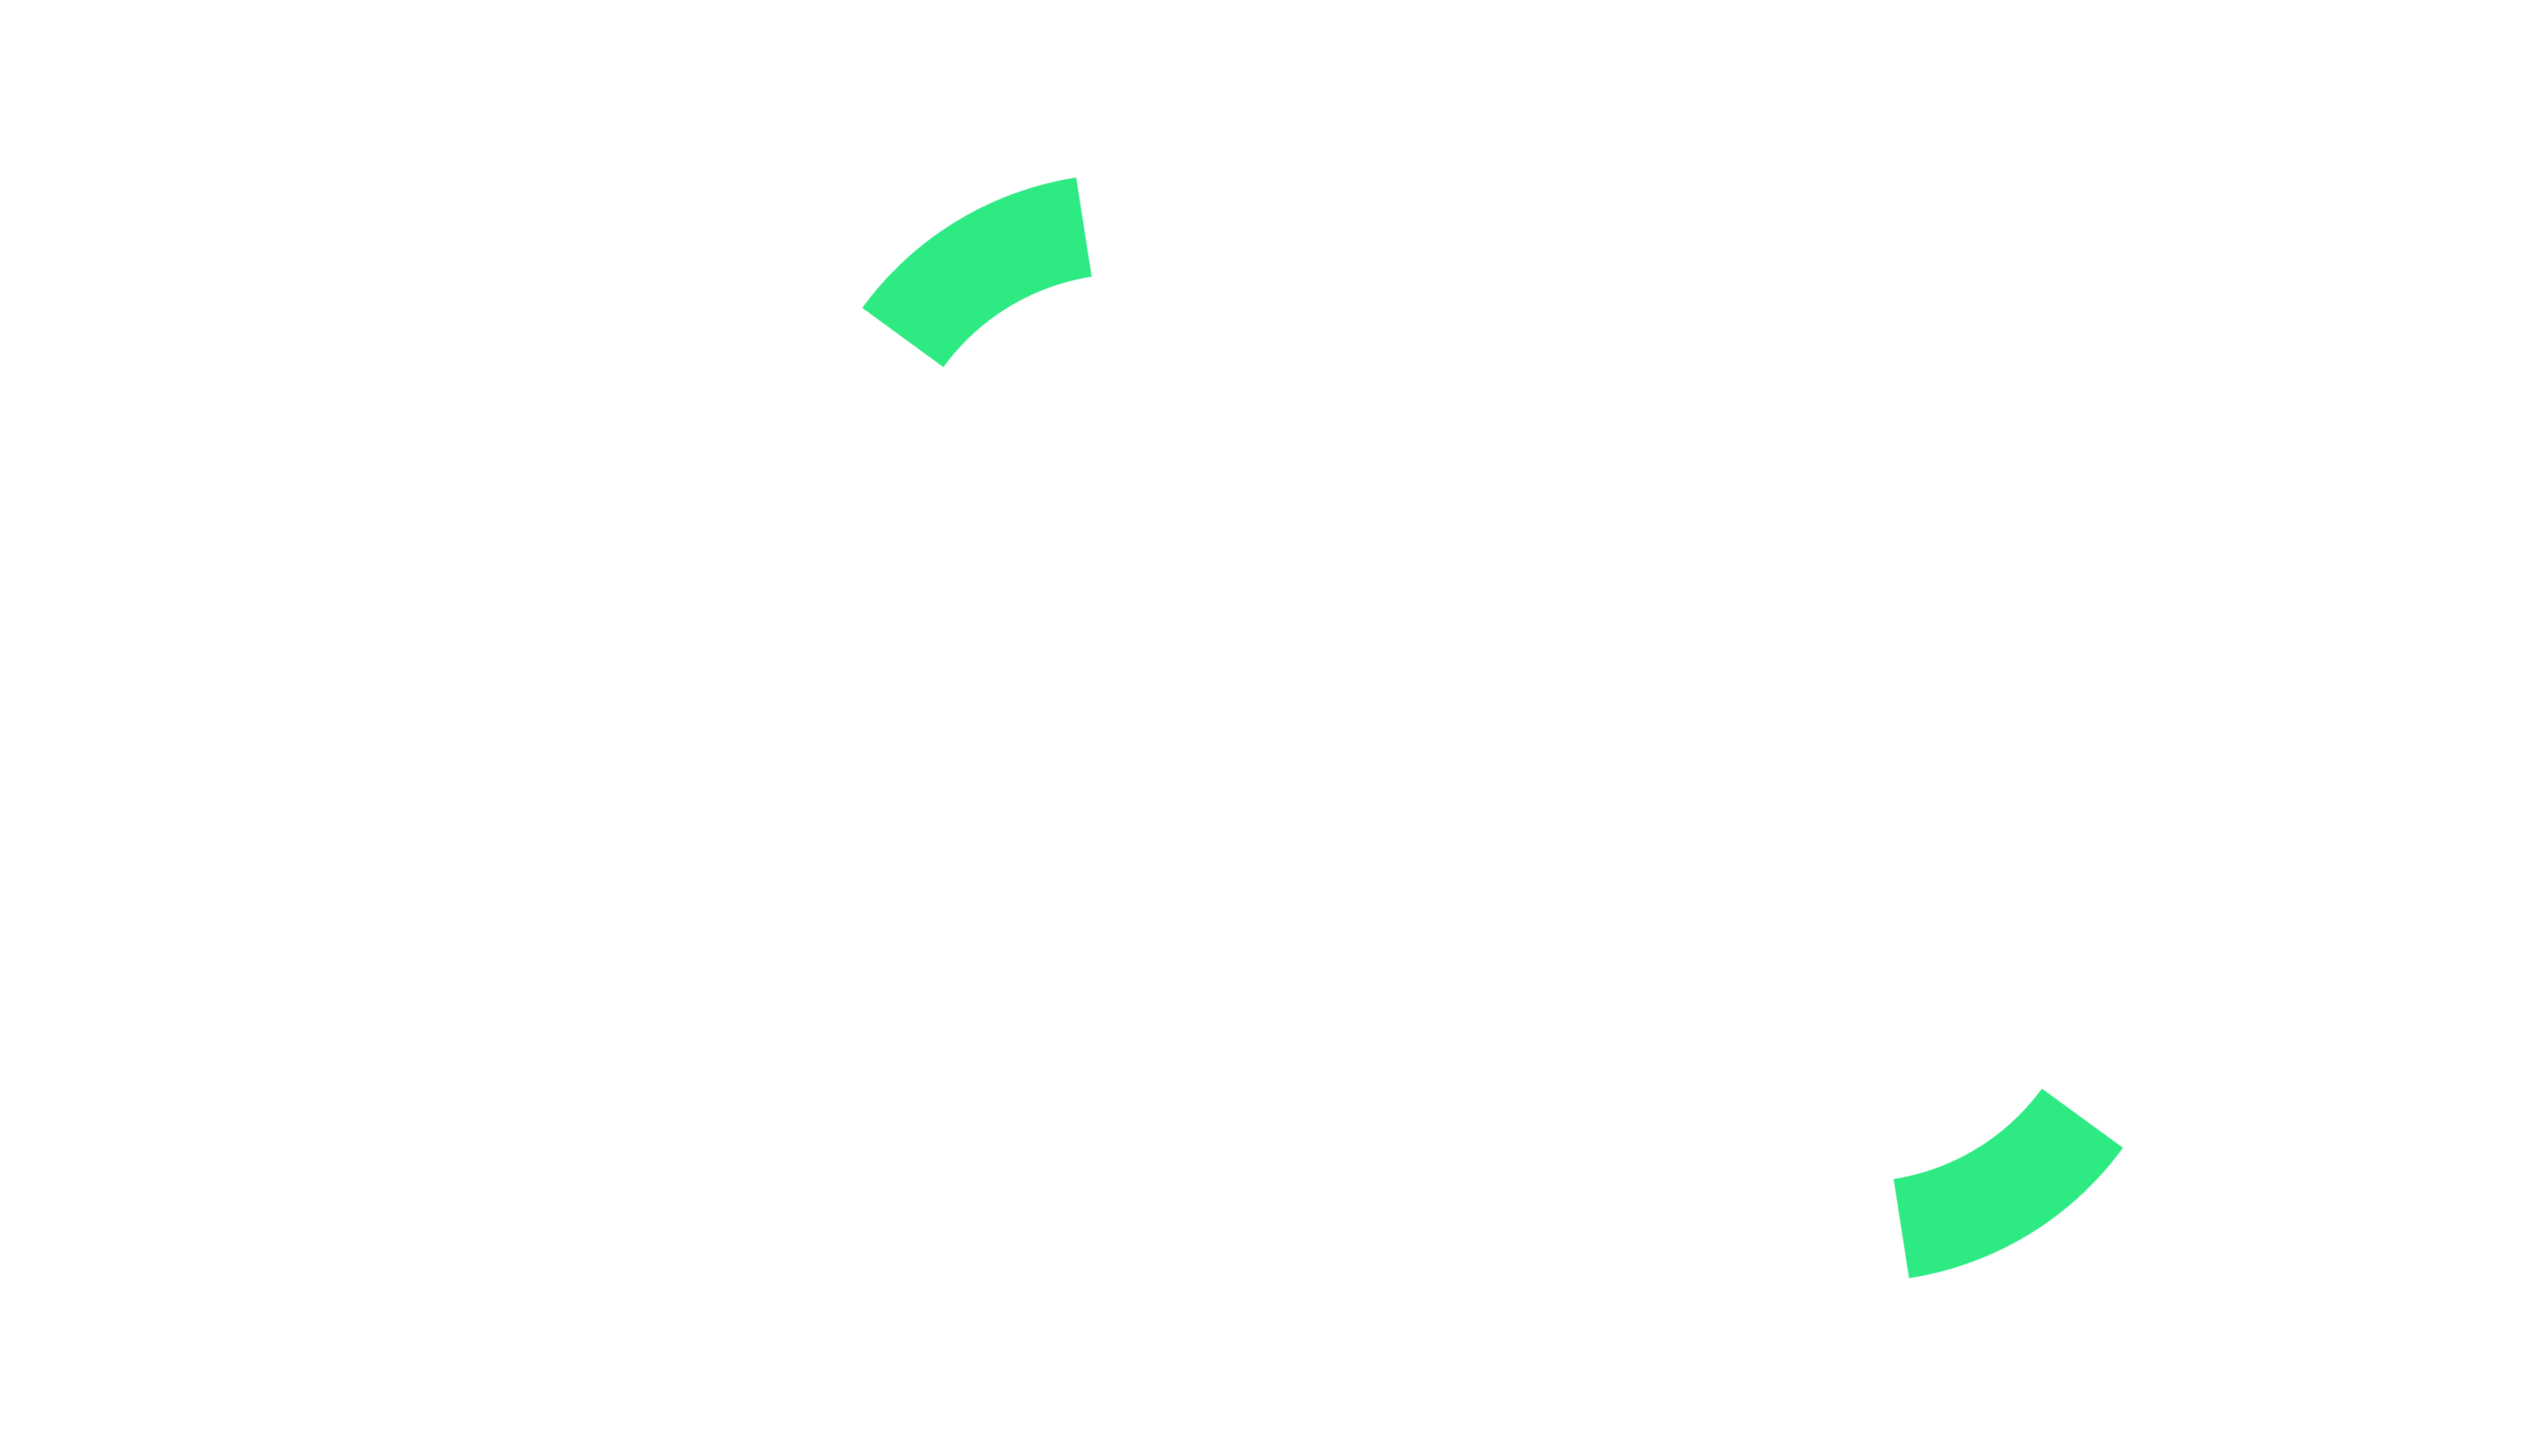 Beel